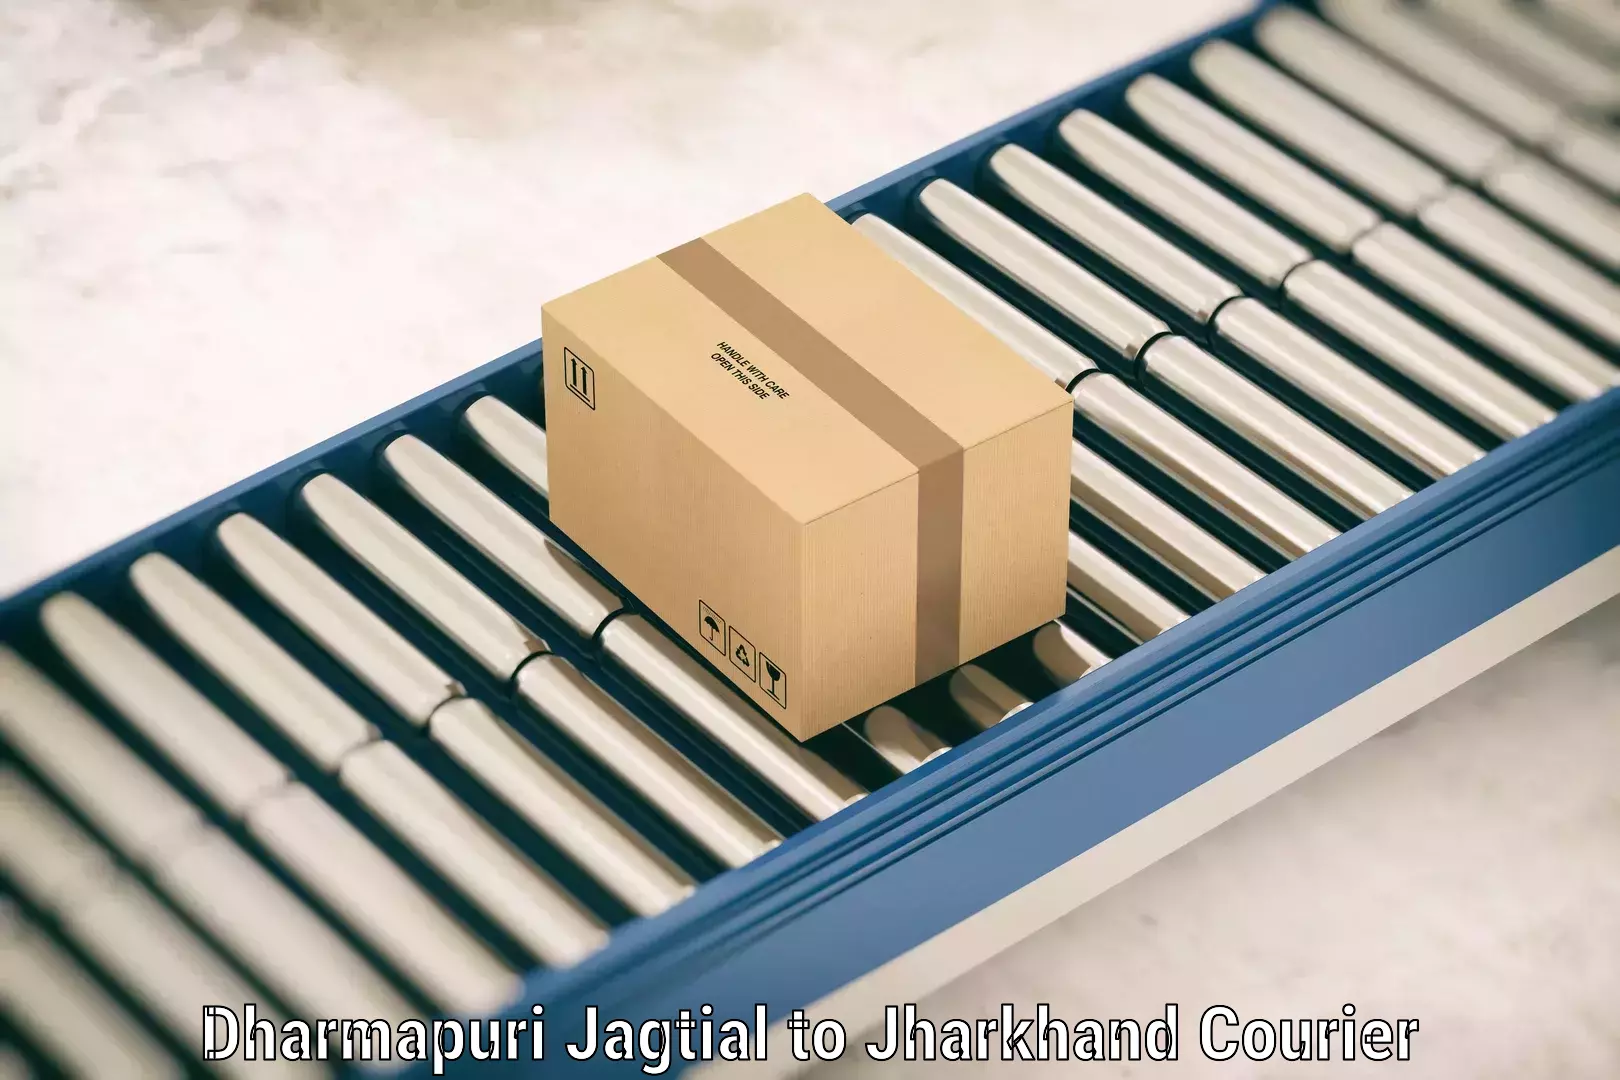 Express luggage delivery Dharmapuri Jagtial to NIT Jamshedpur